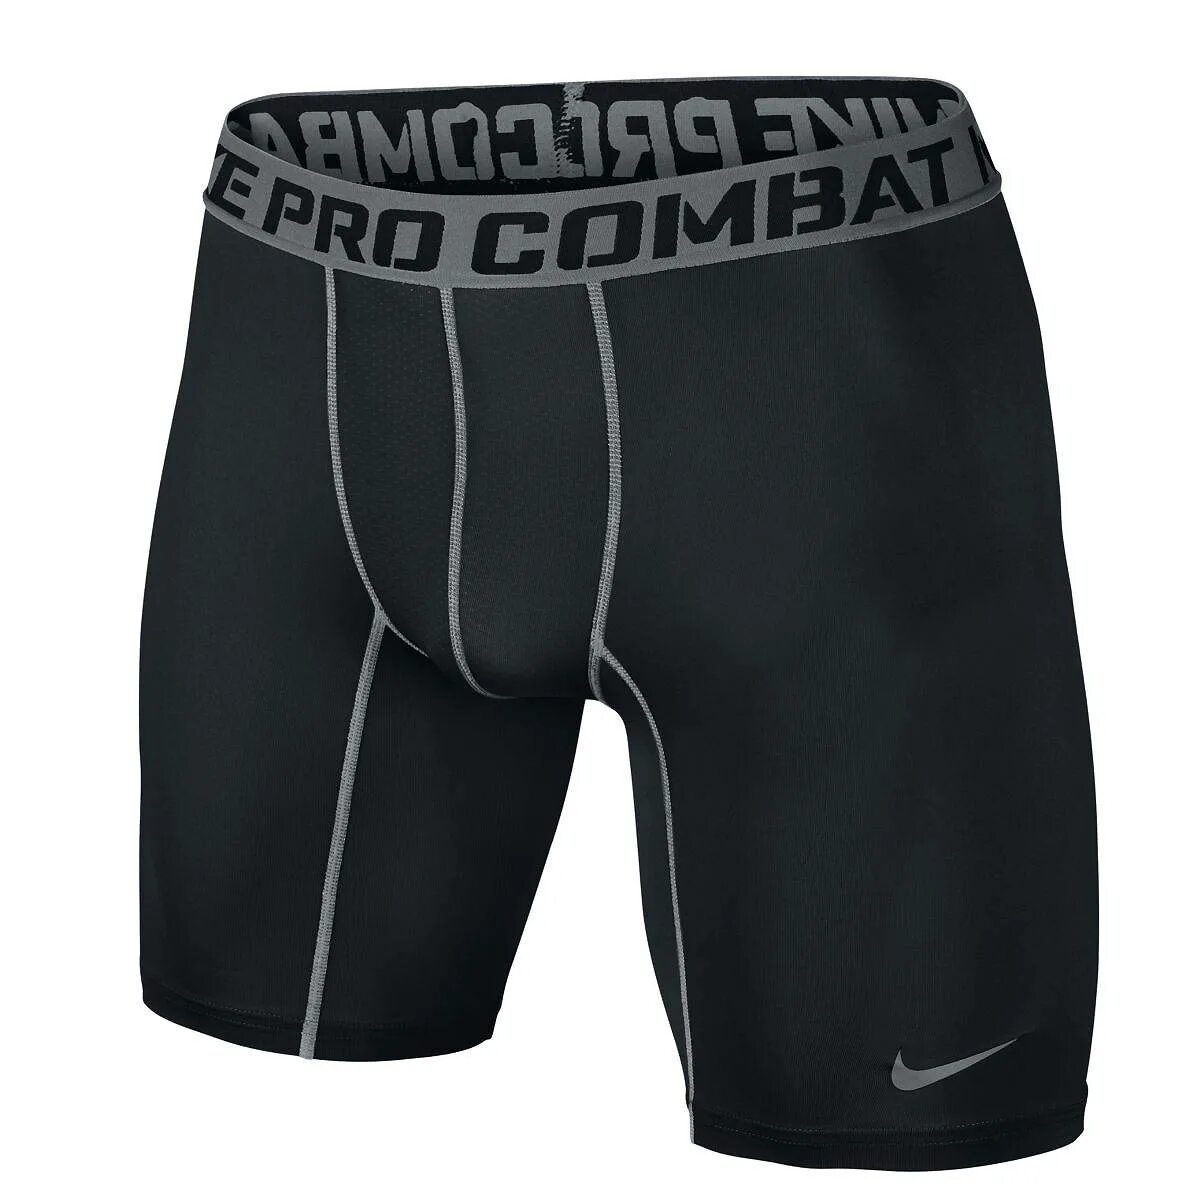 Компрессионка Nike Pro Combat. Компрессионные шорты Nike Pro Combat. Nike Pro Combat Dri-Fit Compression шорты. Термо Nike Pro Combat. Nike pro combat